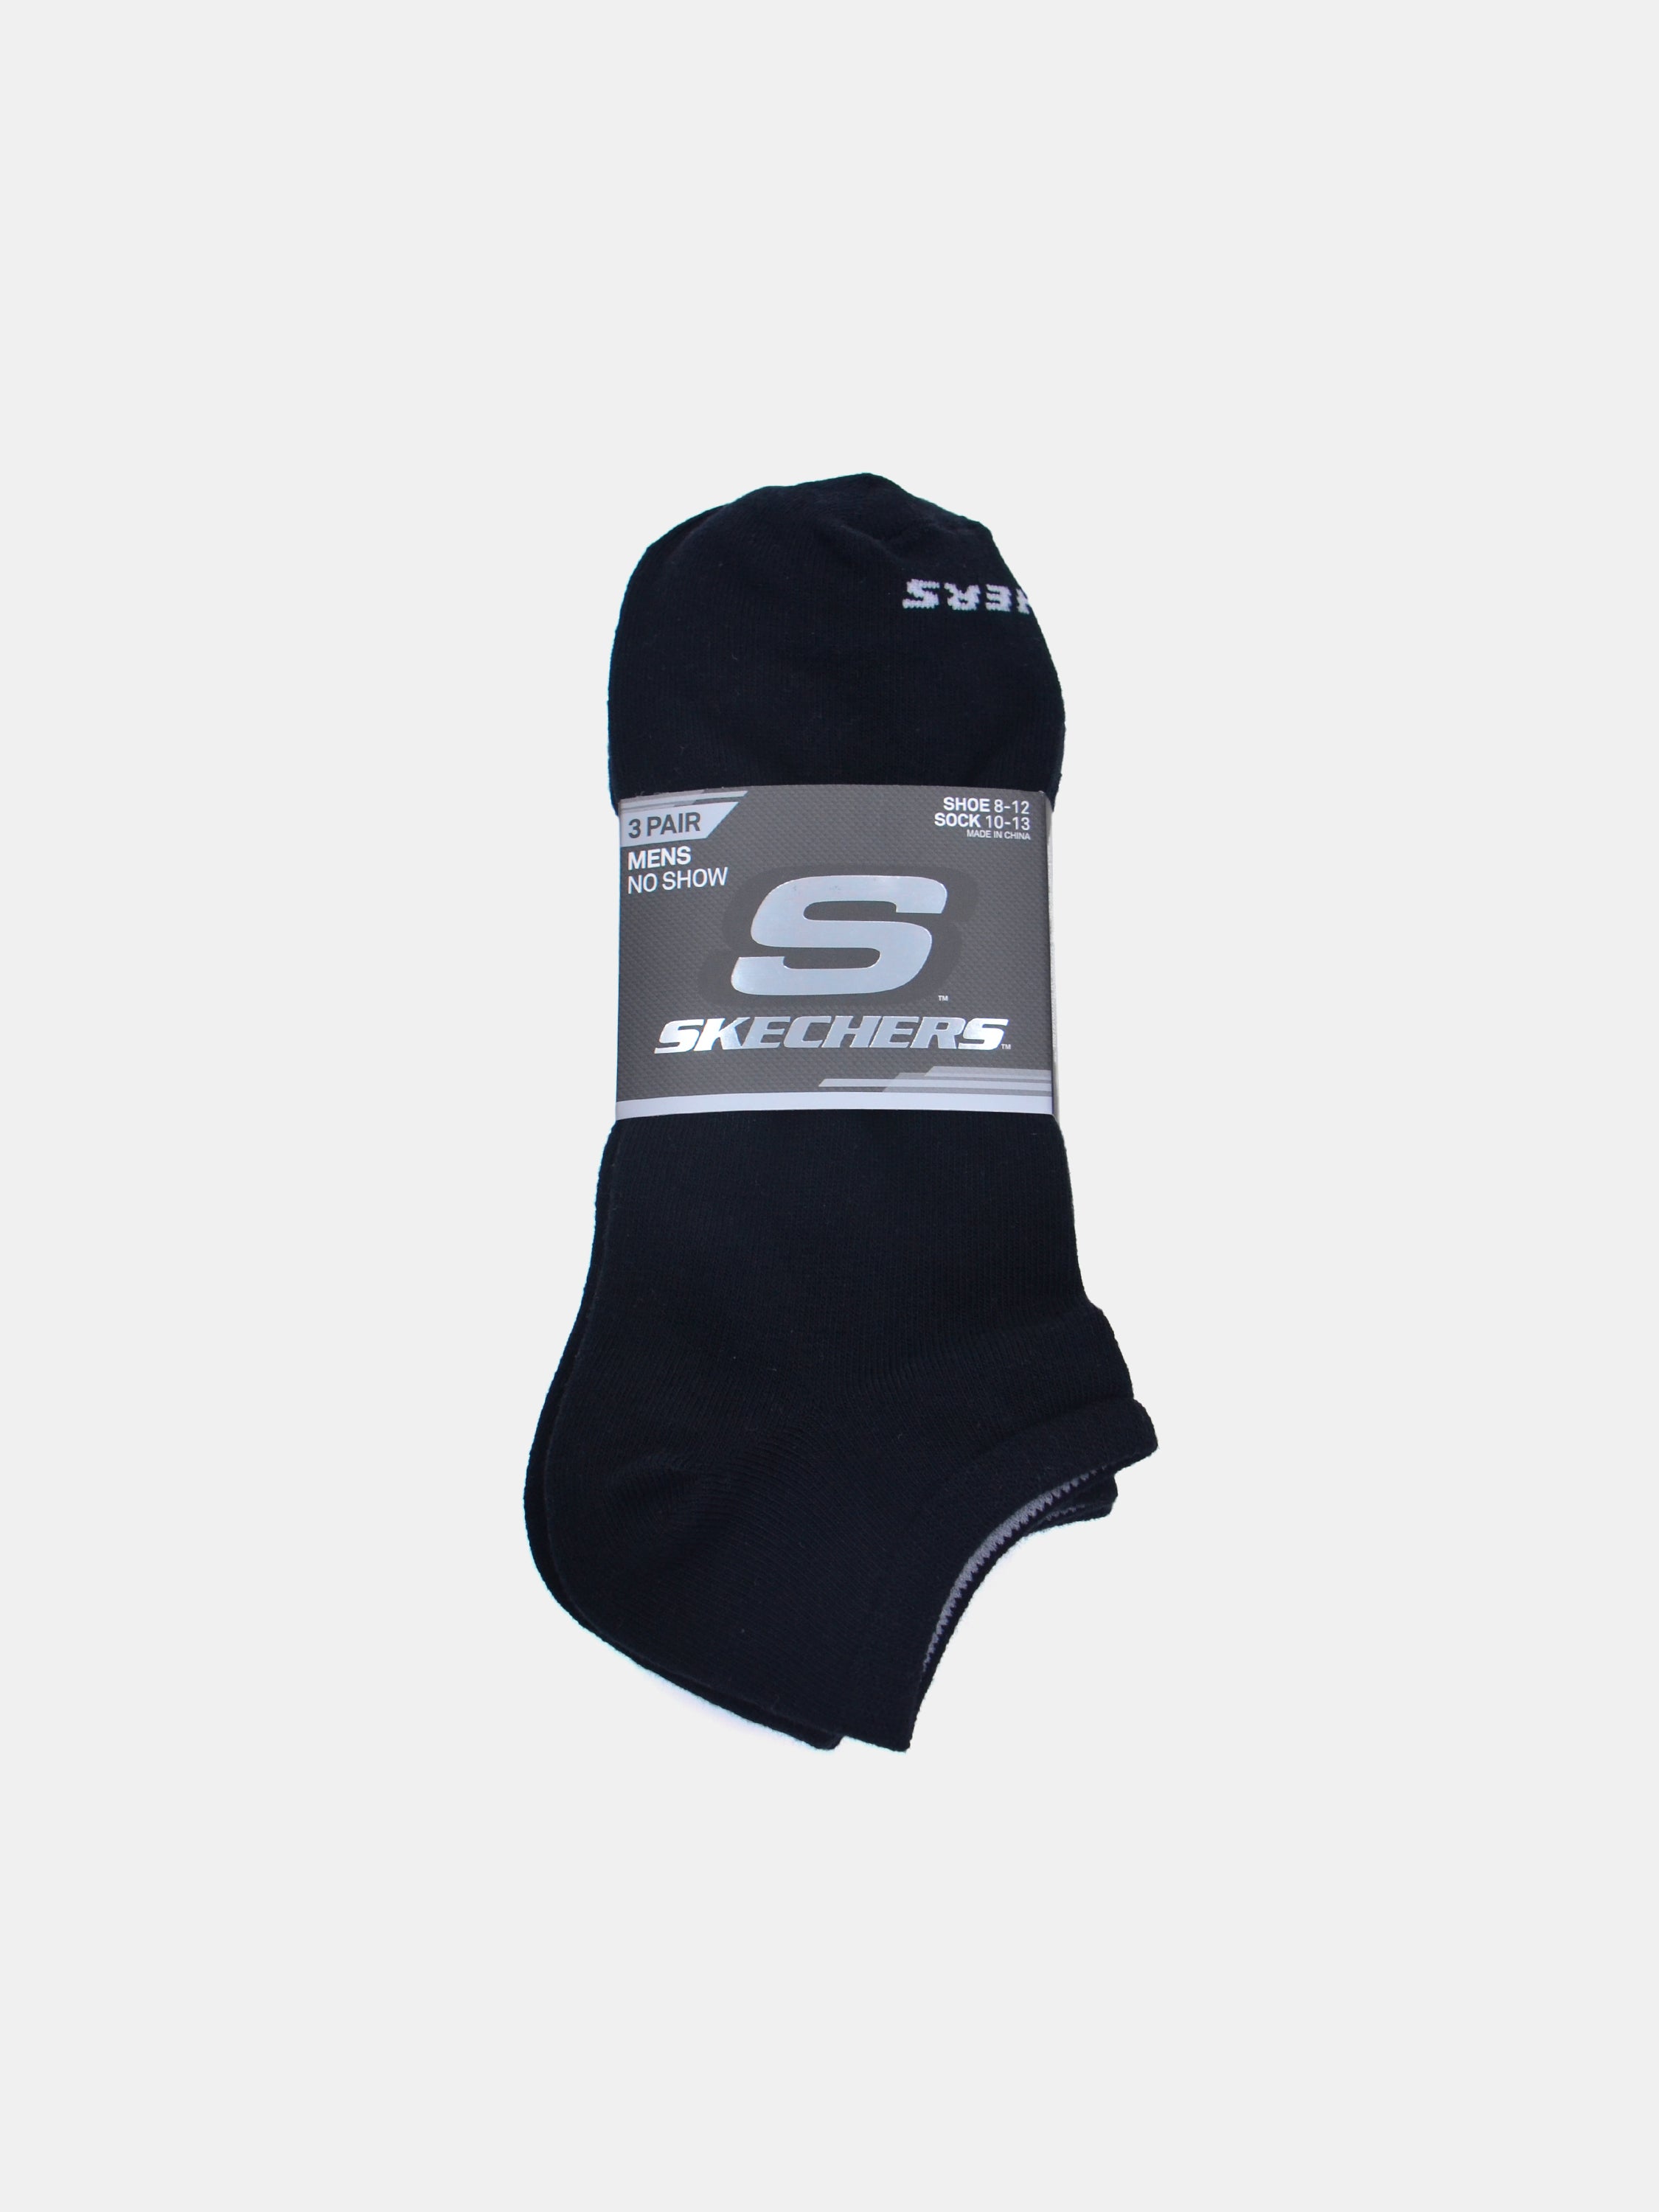 Skechers Men No Show Ankle Socks (3 Pack) #color_Black